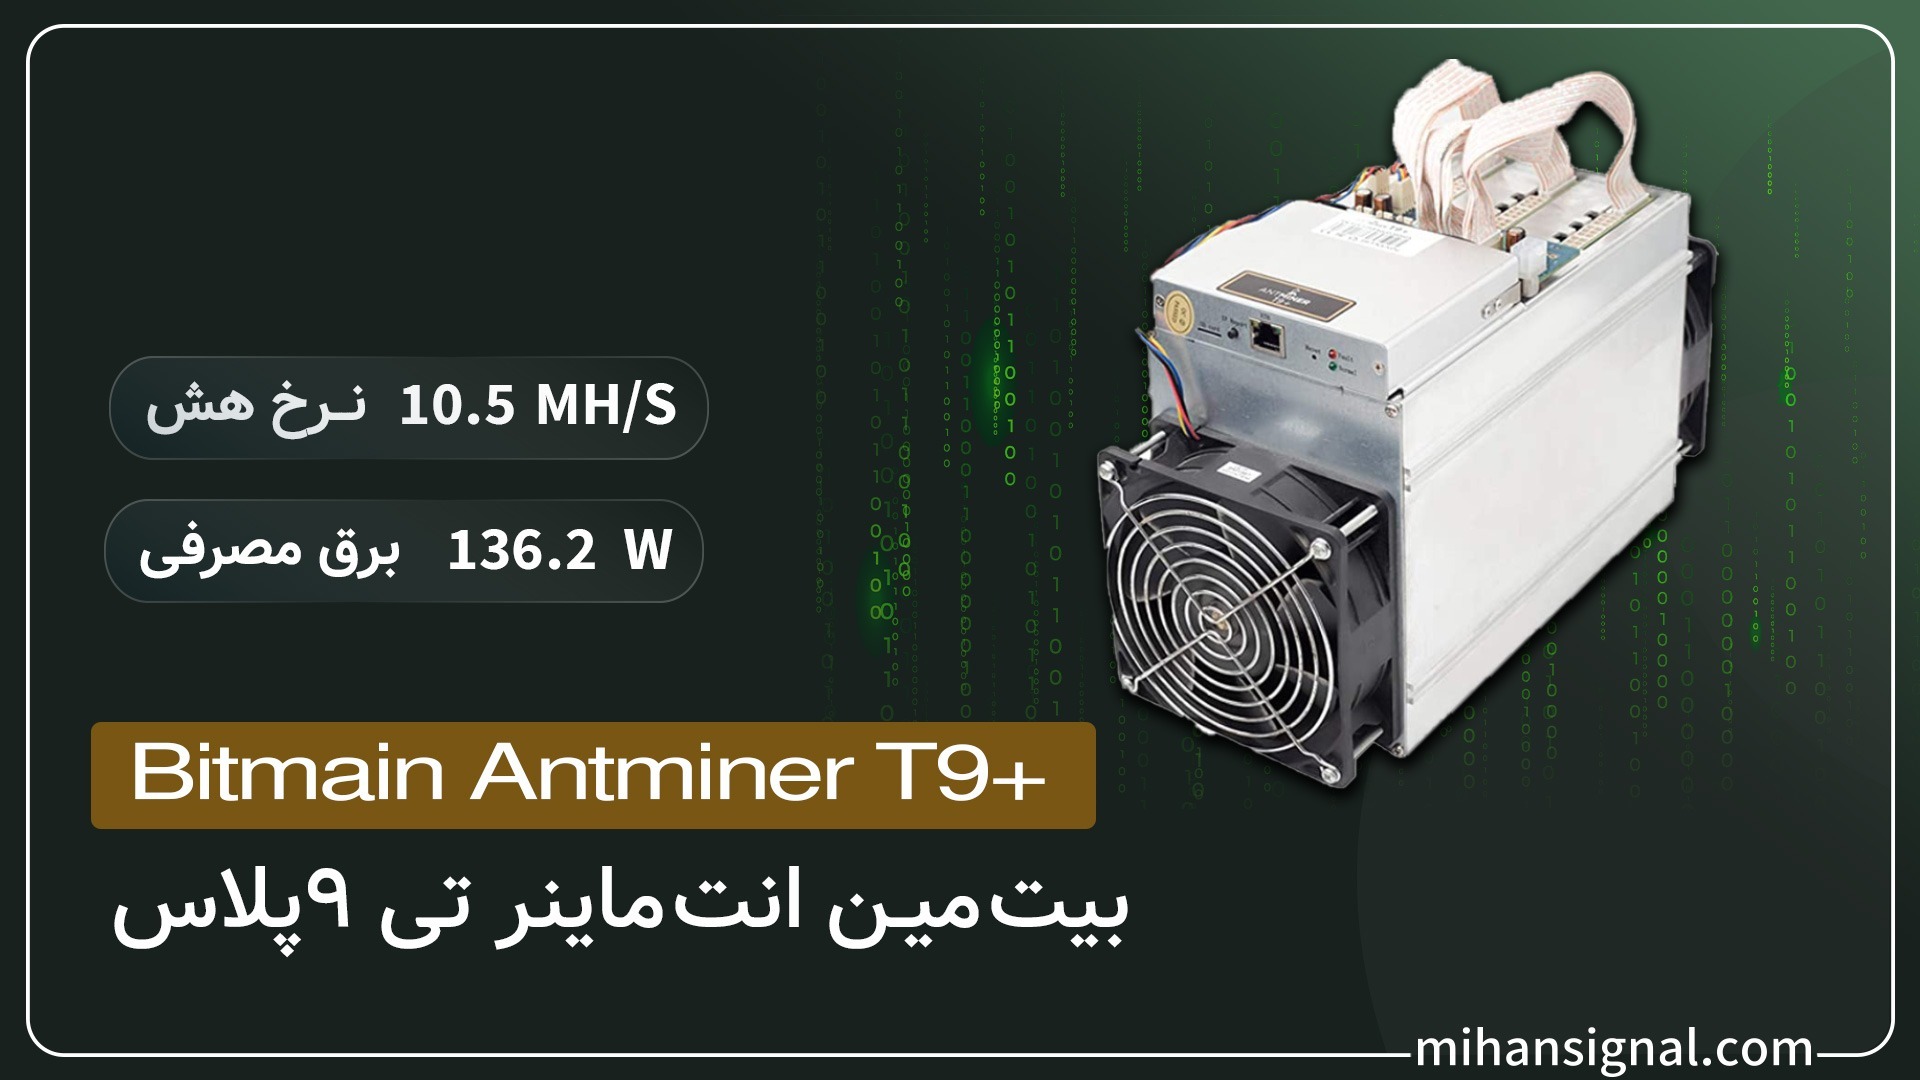 دستگاه ماینر +AntMiner T9